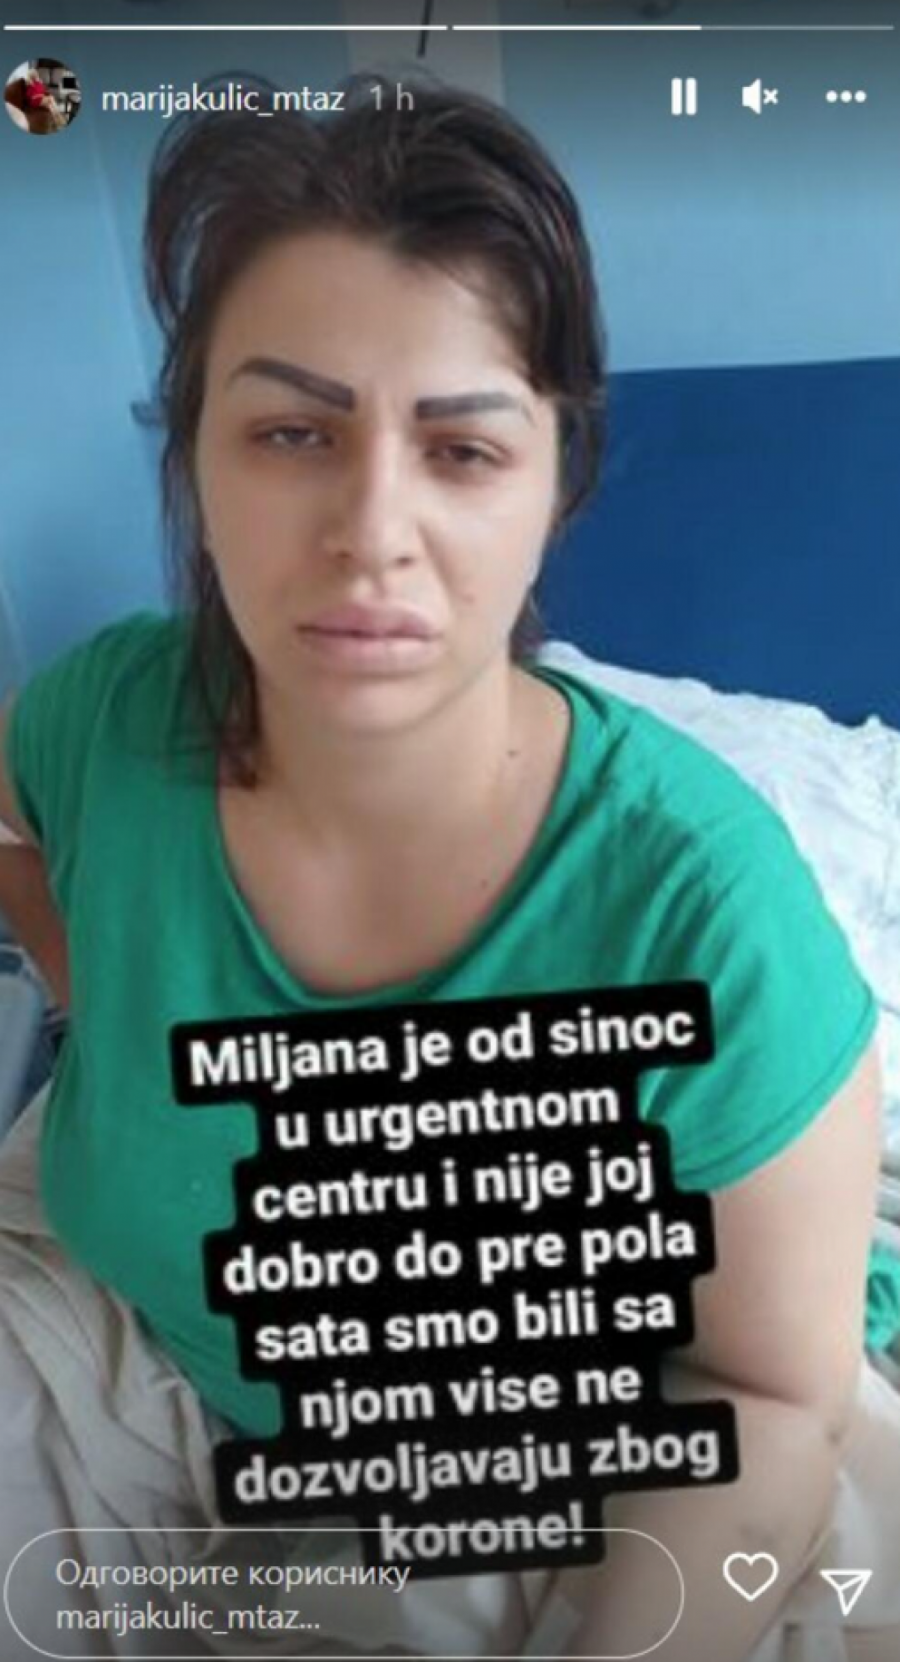 MILJANA KULIĆ ZAVRŠILA U BOLNICI NAKON SMAJENJA ŽELUCA! Marija Kulić se oglasila za Alo! nakon ćerkine hosptalizacije